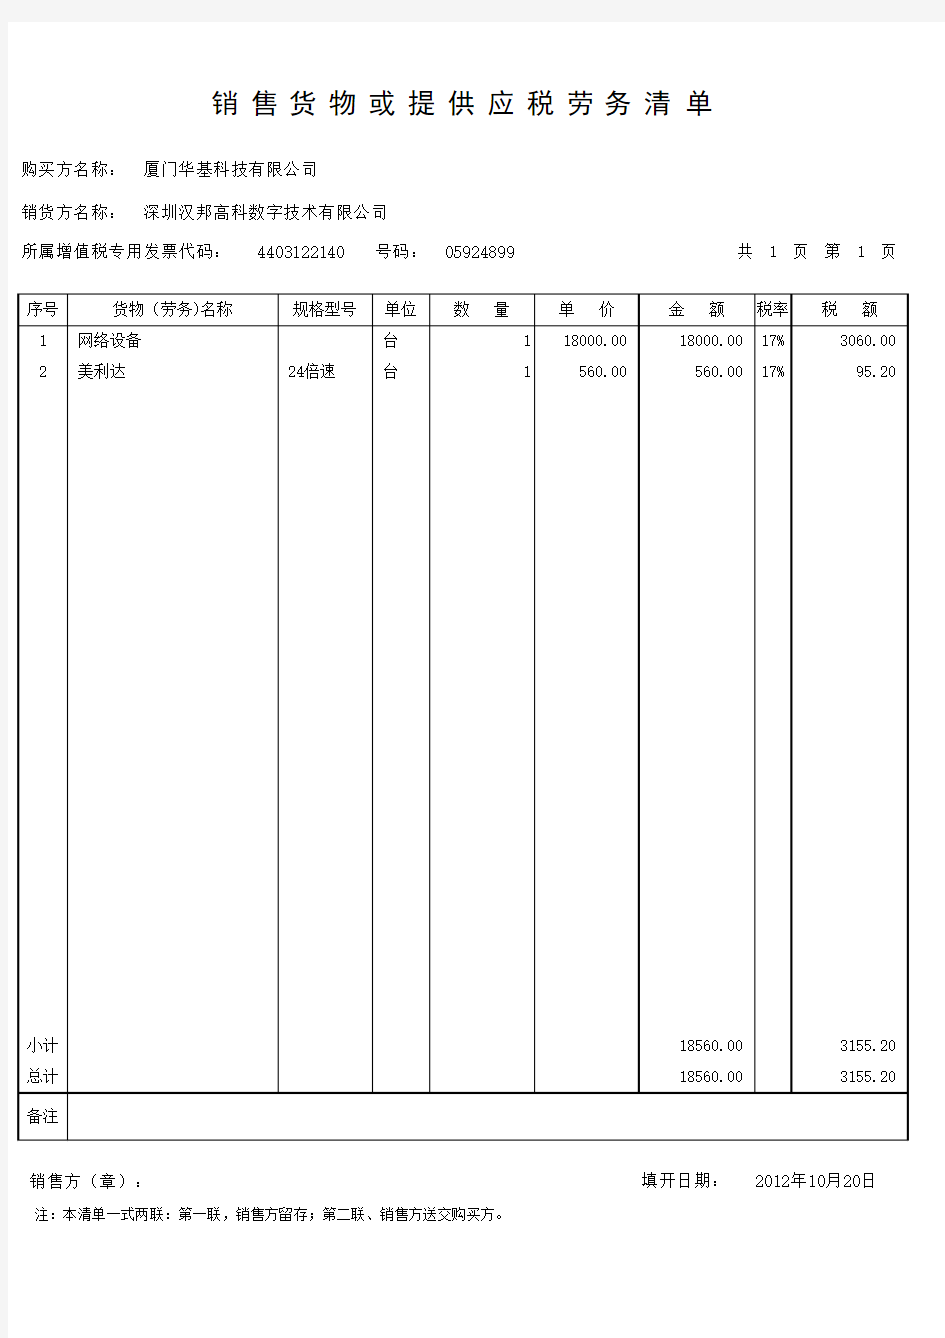 增值税销售货物或者提供应税劳务清单(标准模板)